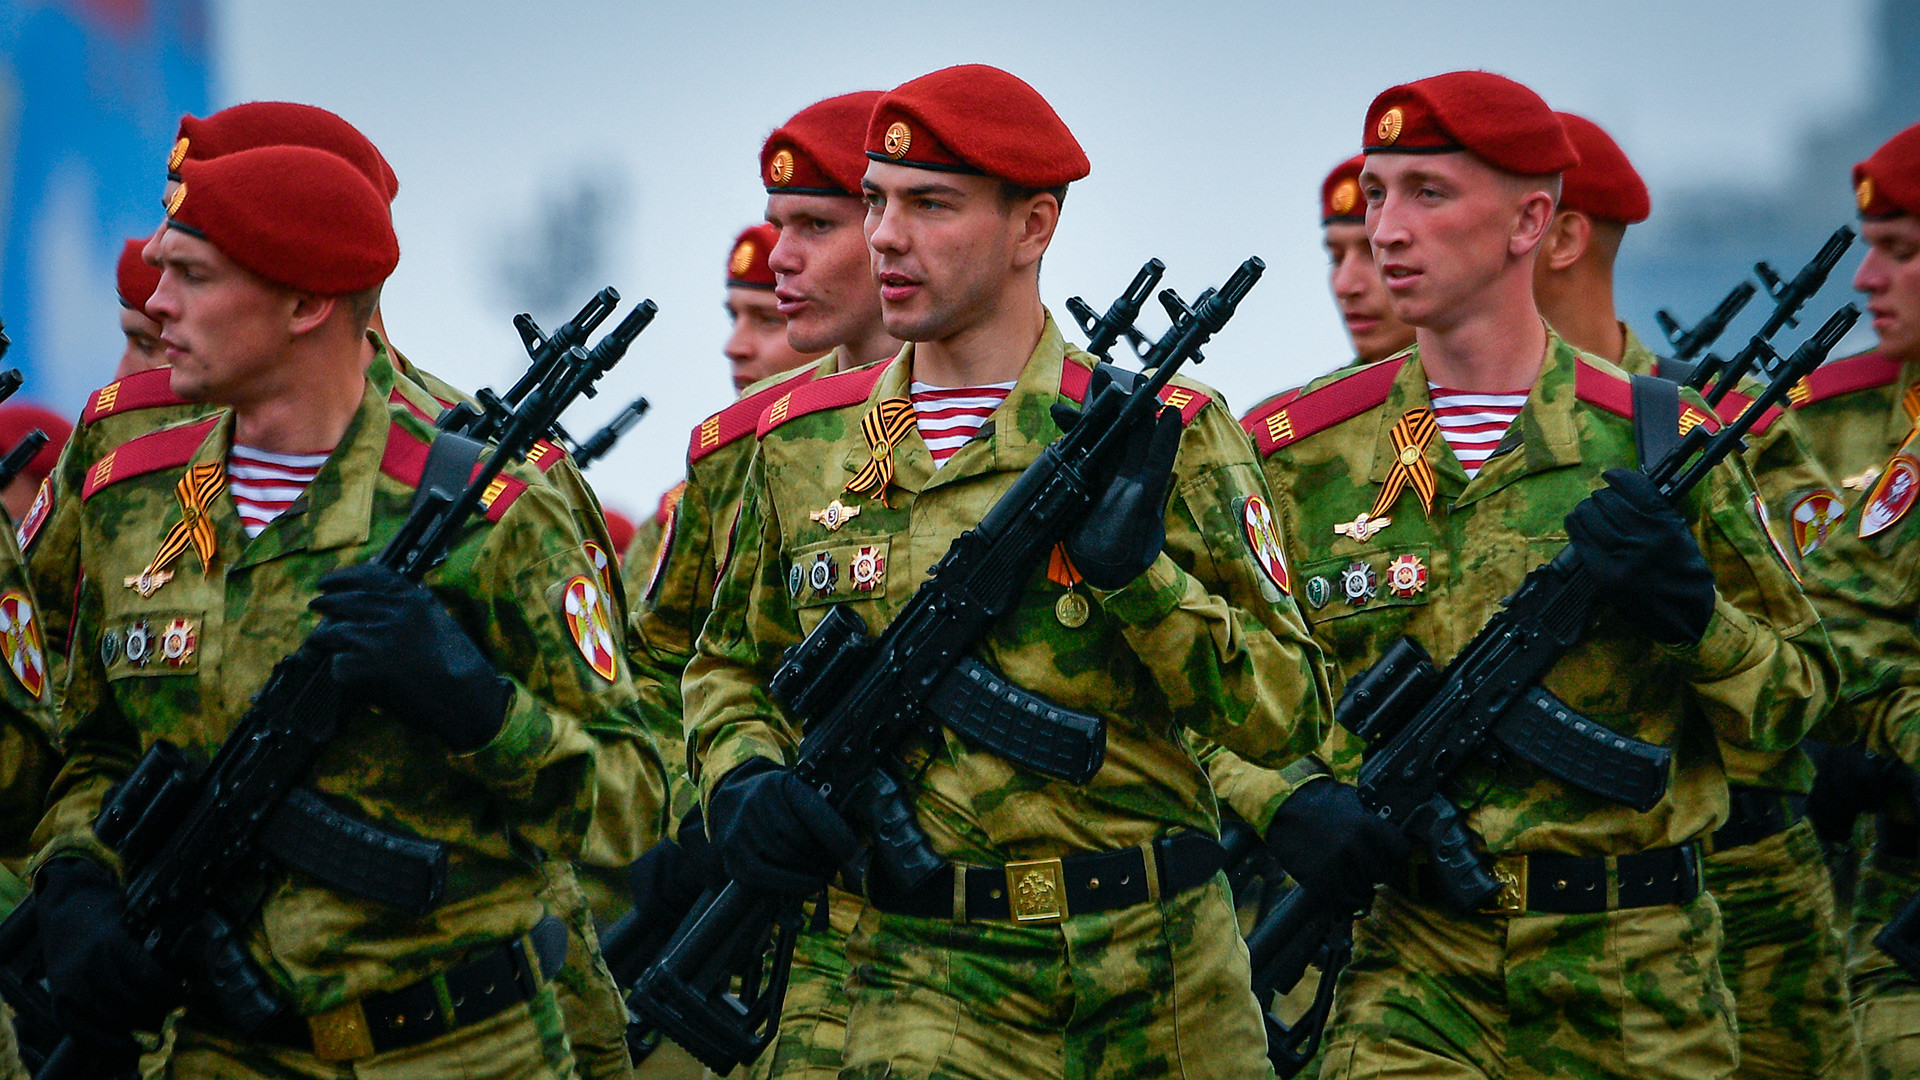 ロシア Vs Nato 精鋭特殊部隊の将校になるには何が必要か ロシア ビヨンド